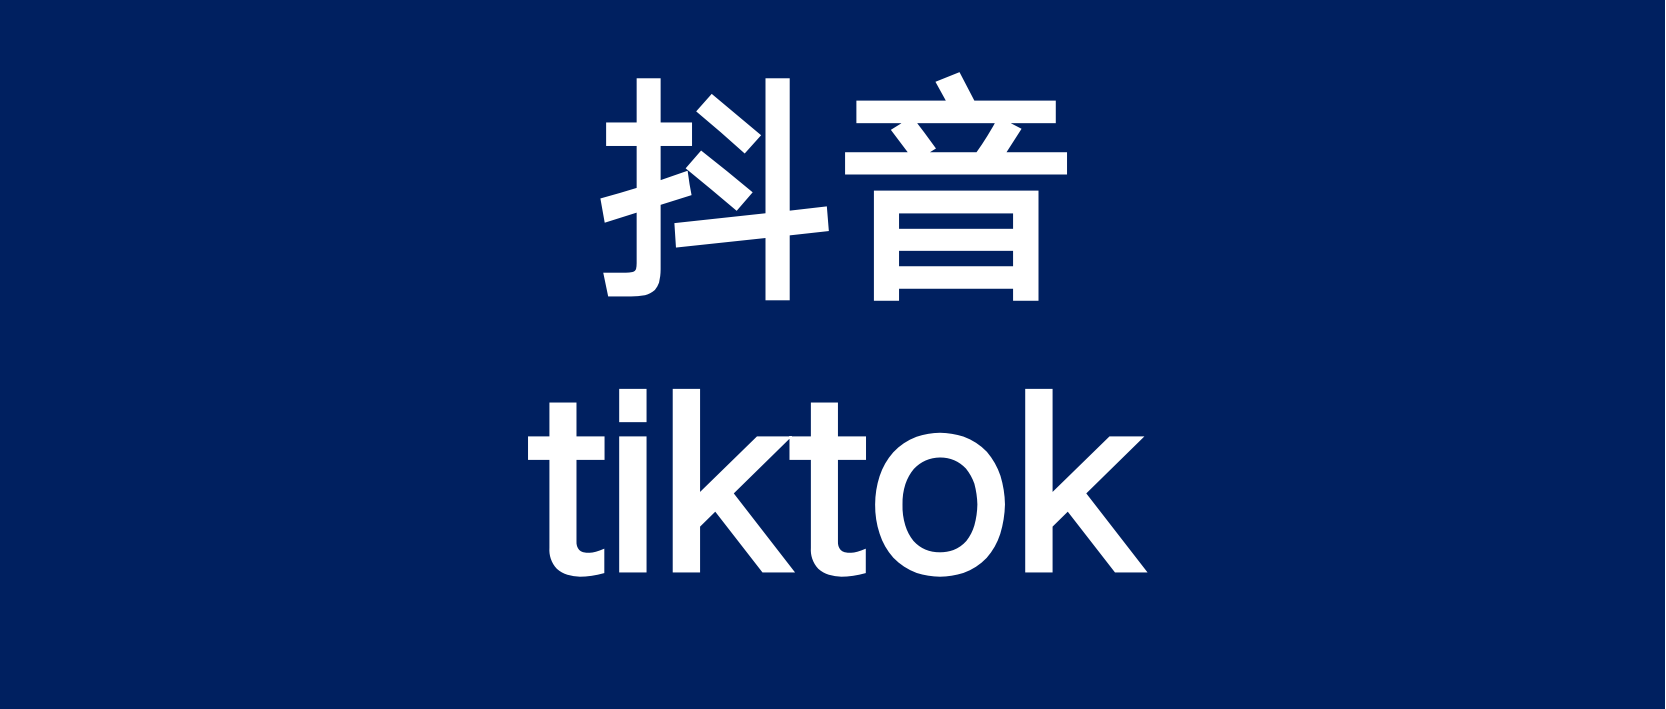 从国内抖音的发展轨迹看TikTok的机遇和挑战